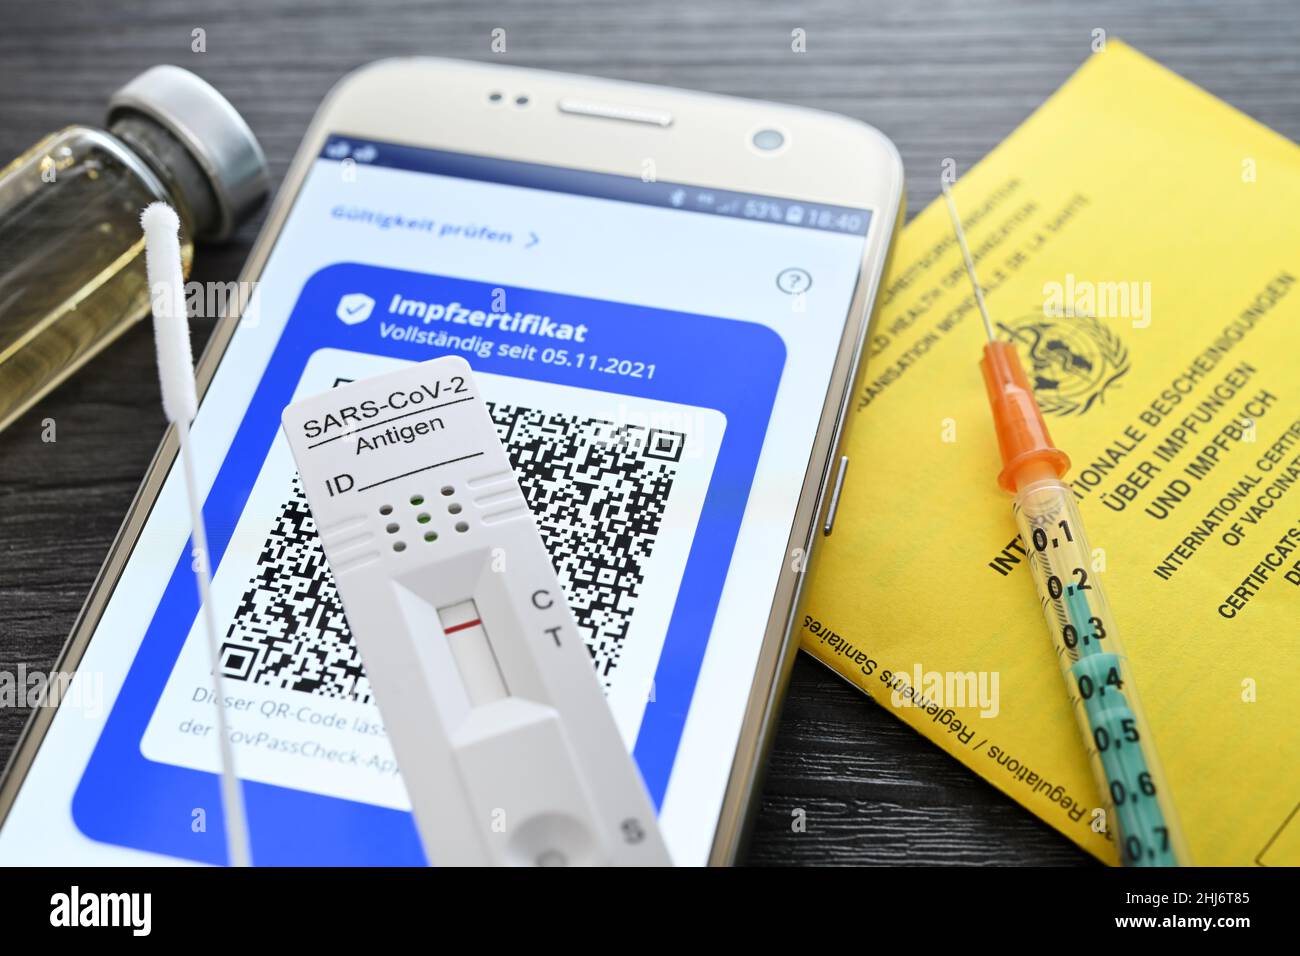 Digitales Impfzertifikat auf Smartphone mit negativem Corona-Schnelltest, Impfausweis und Impfspritze, Symbolfoto digitaler Impfnachweis und 2G+-Regel Stock Photo